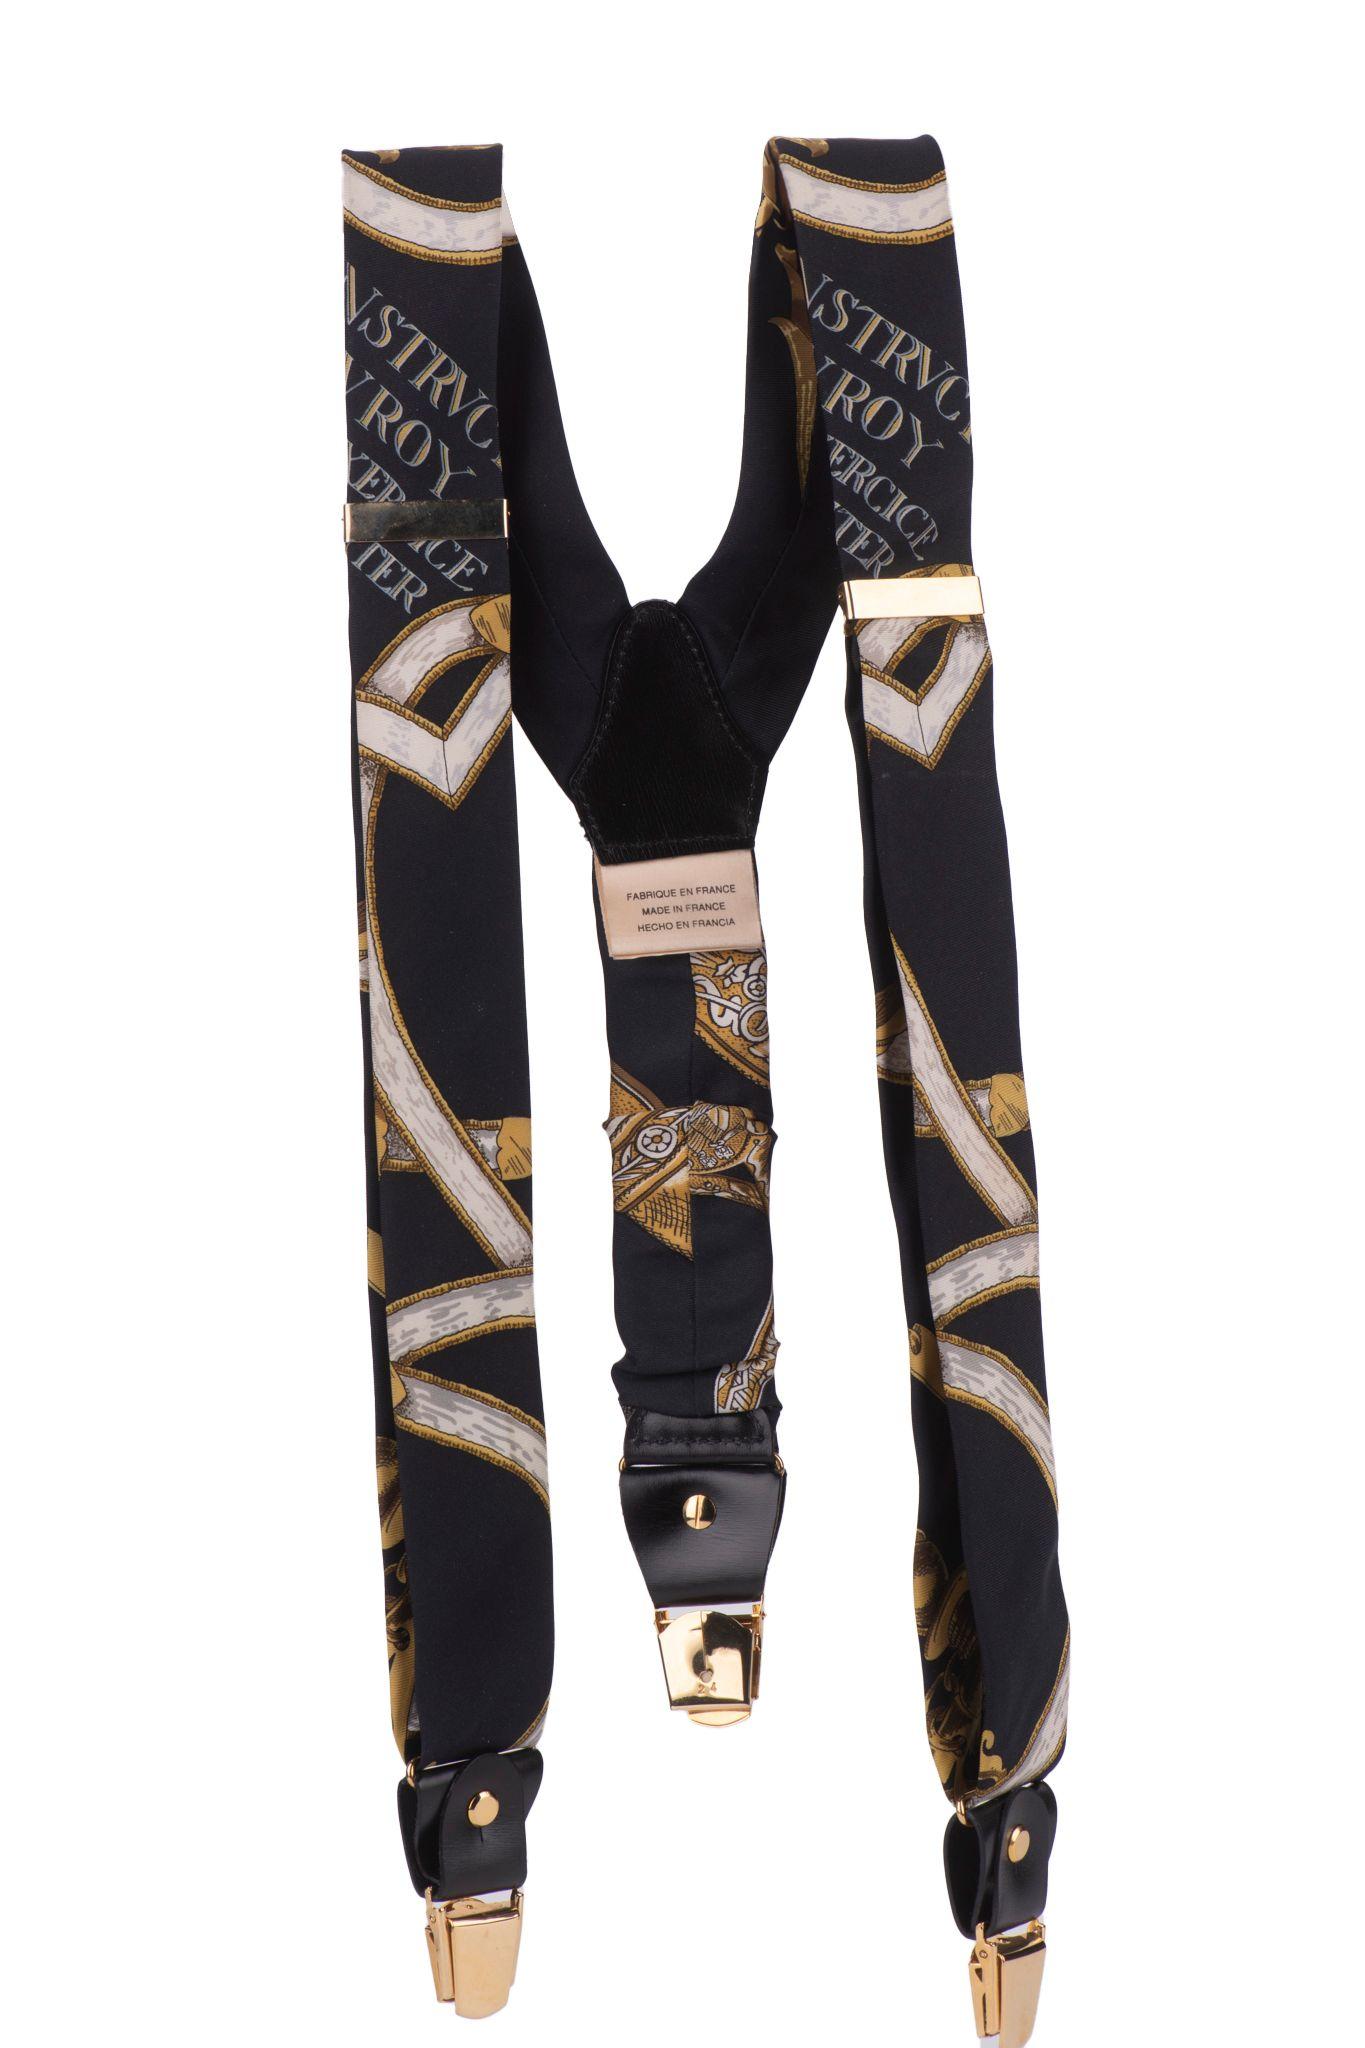 Hermès seltene und sammelbare Vintage schwarz und gold Seide Hosenträger. Einstellbare Länge, kann mehrere Größen passen.
Kommt mit Originalverpackung.